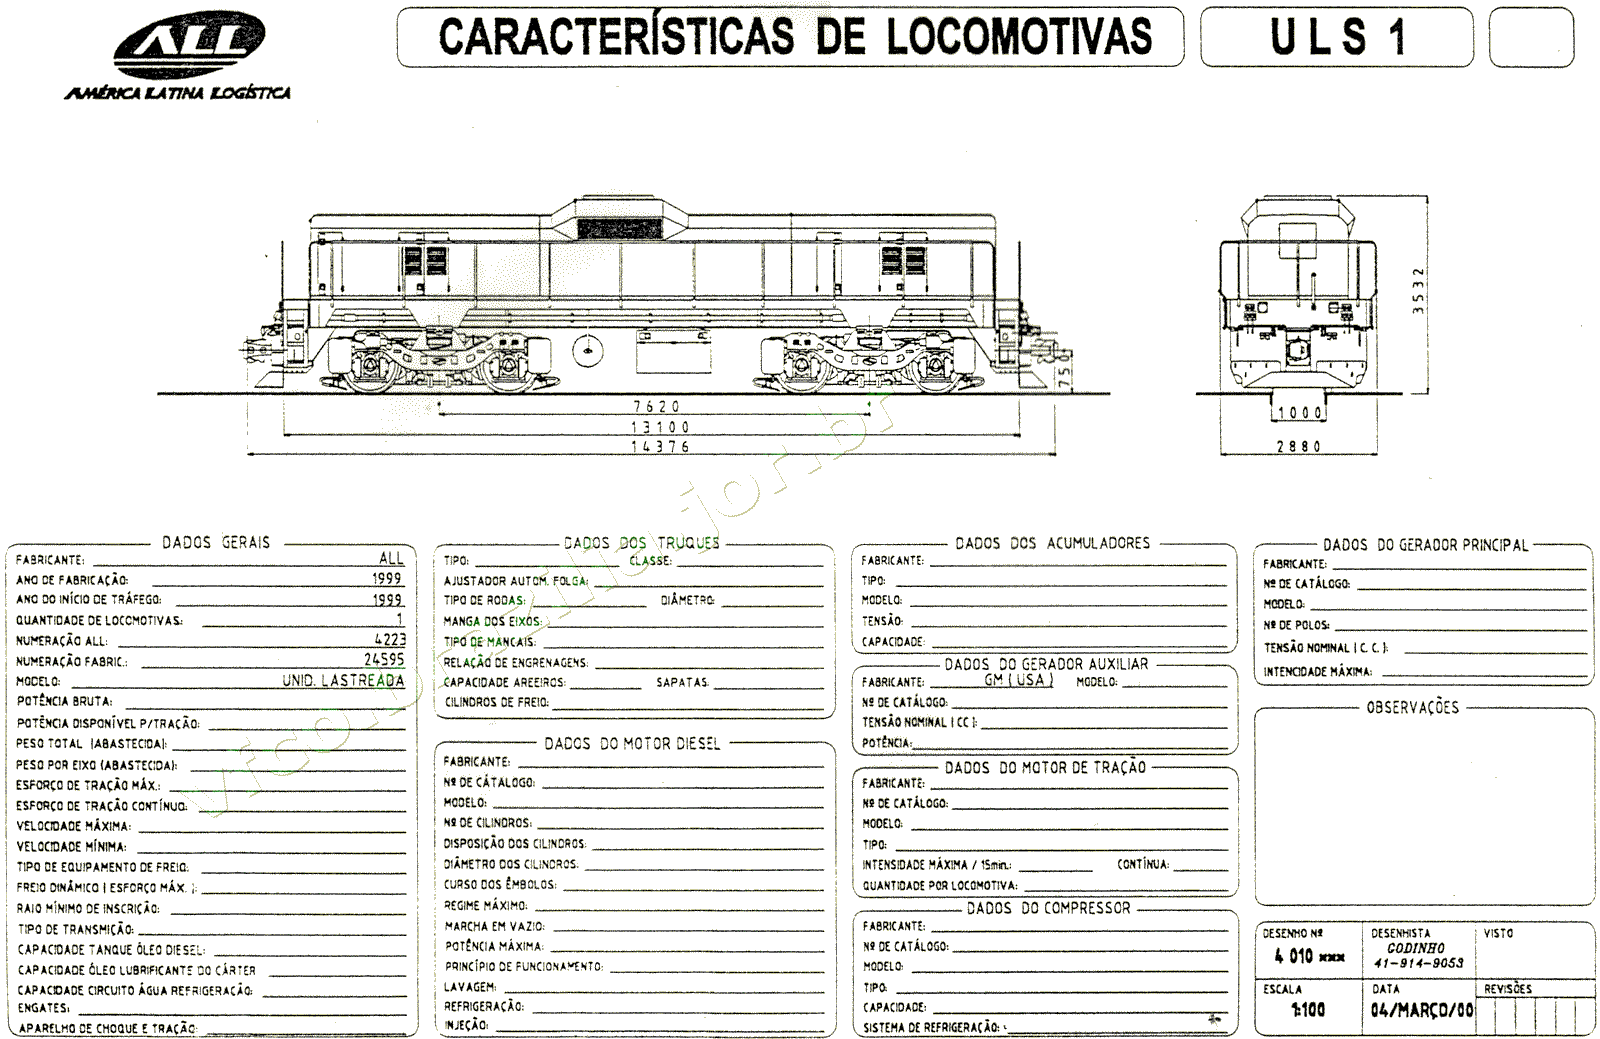 Desenho, dimensões e características da Locomotiva "slug" ULS1 da ferrovia ALL